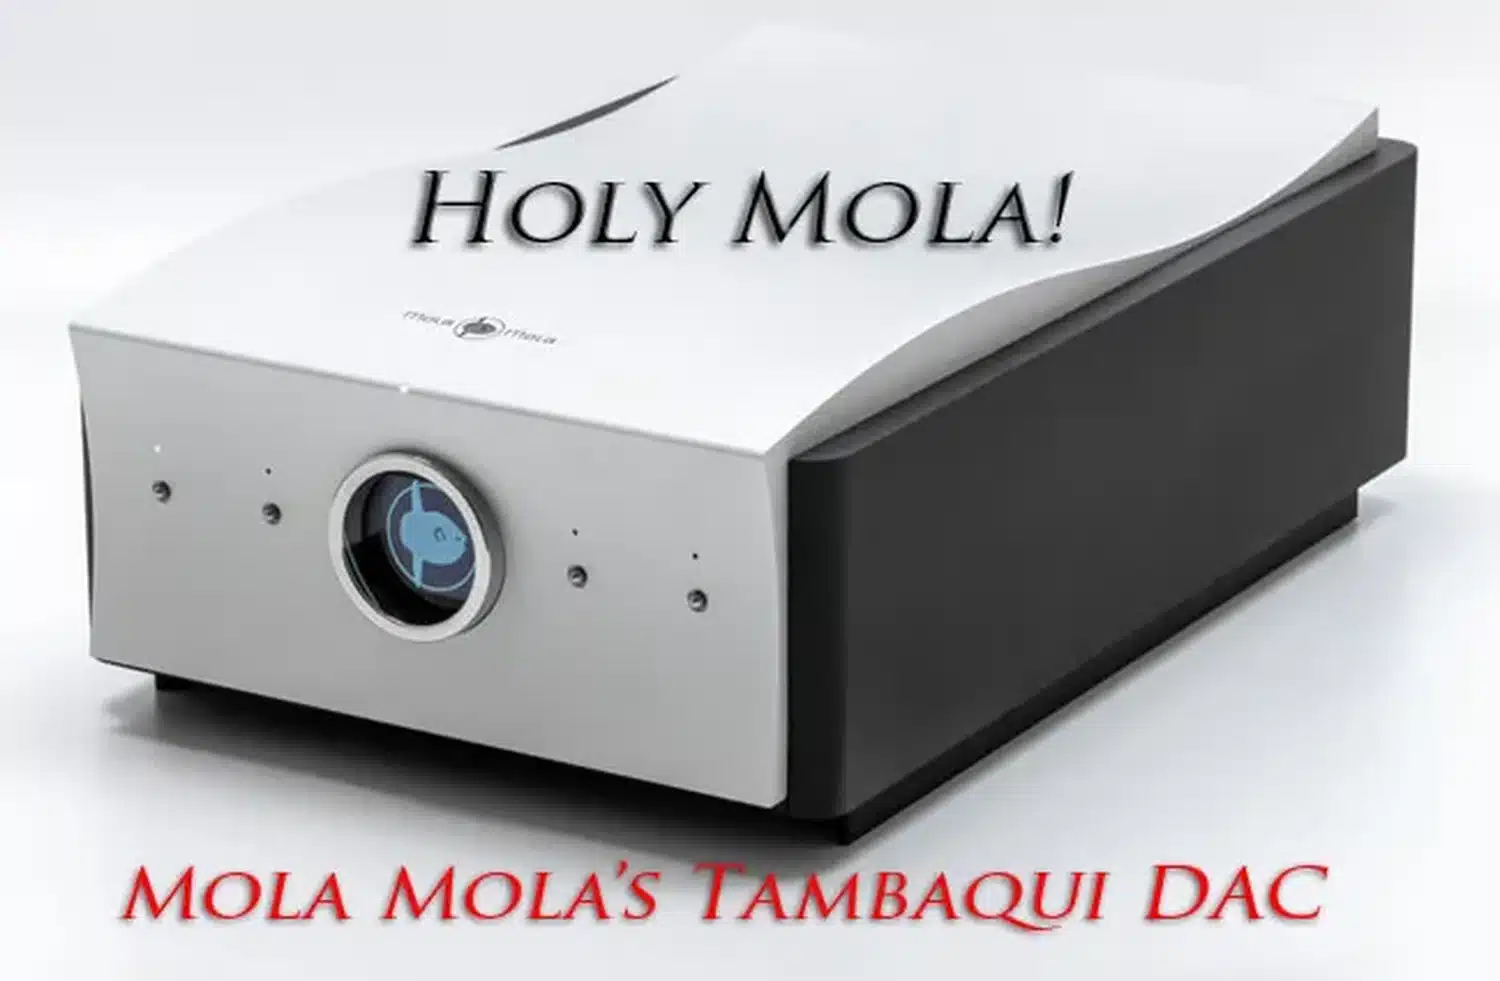 Un appareil audio, le DAC Mola-Mola Tambaqui au design argenté en vague, met en évidence son affichage circulaire sur le devant avant le logo de la marque (un poisson ventru). La photo est sous-titré "Holy Mola !" par Stereo Times (par 1877.audio)